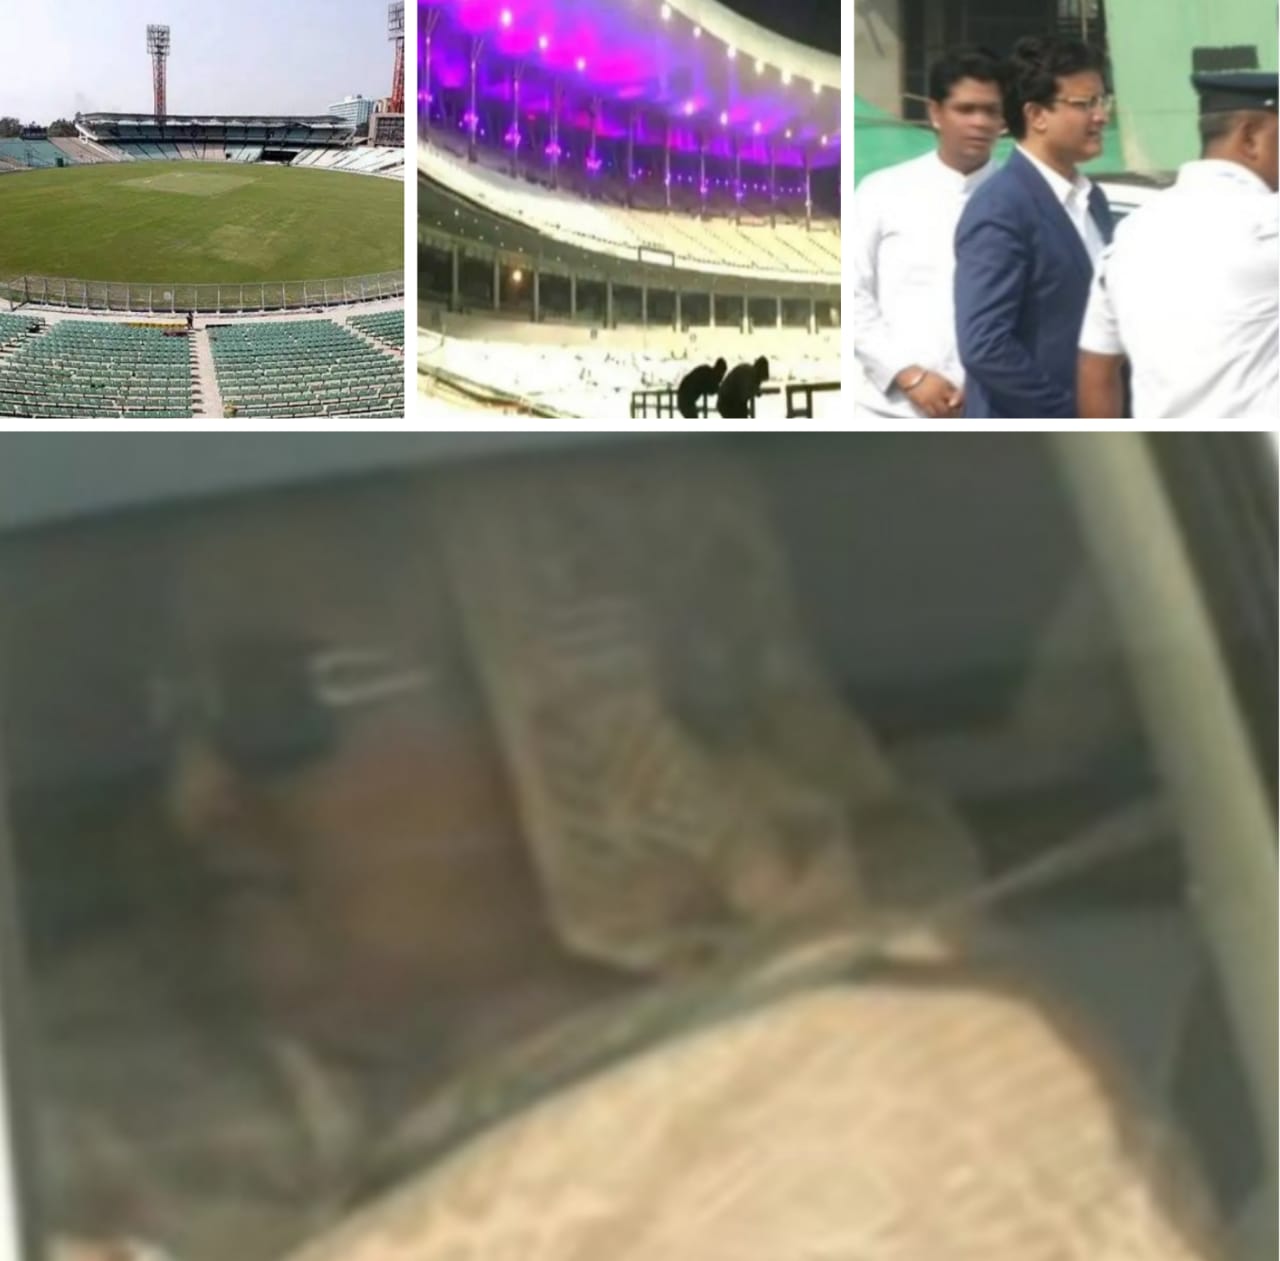 ऐतिहासिक डे नाईट टेस्ट मैच का उद्घाटन करने कोलकाता पहुँची बाँग्लादेश की प्रधानमंत्री